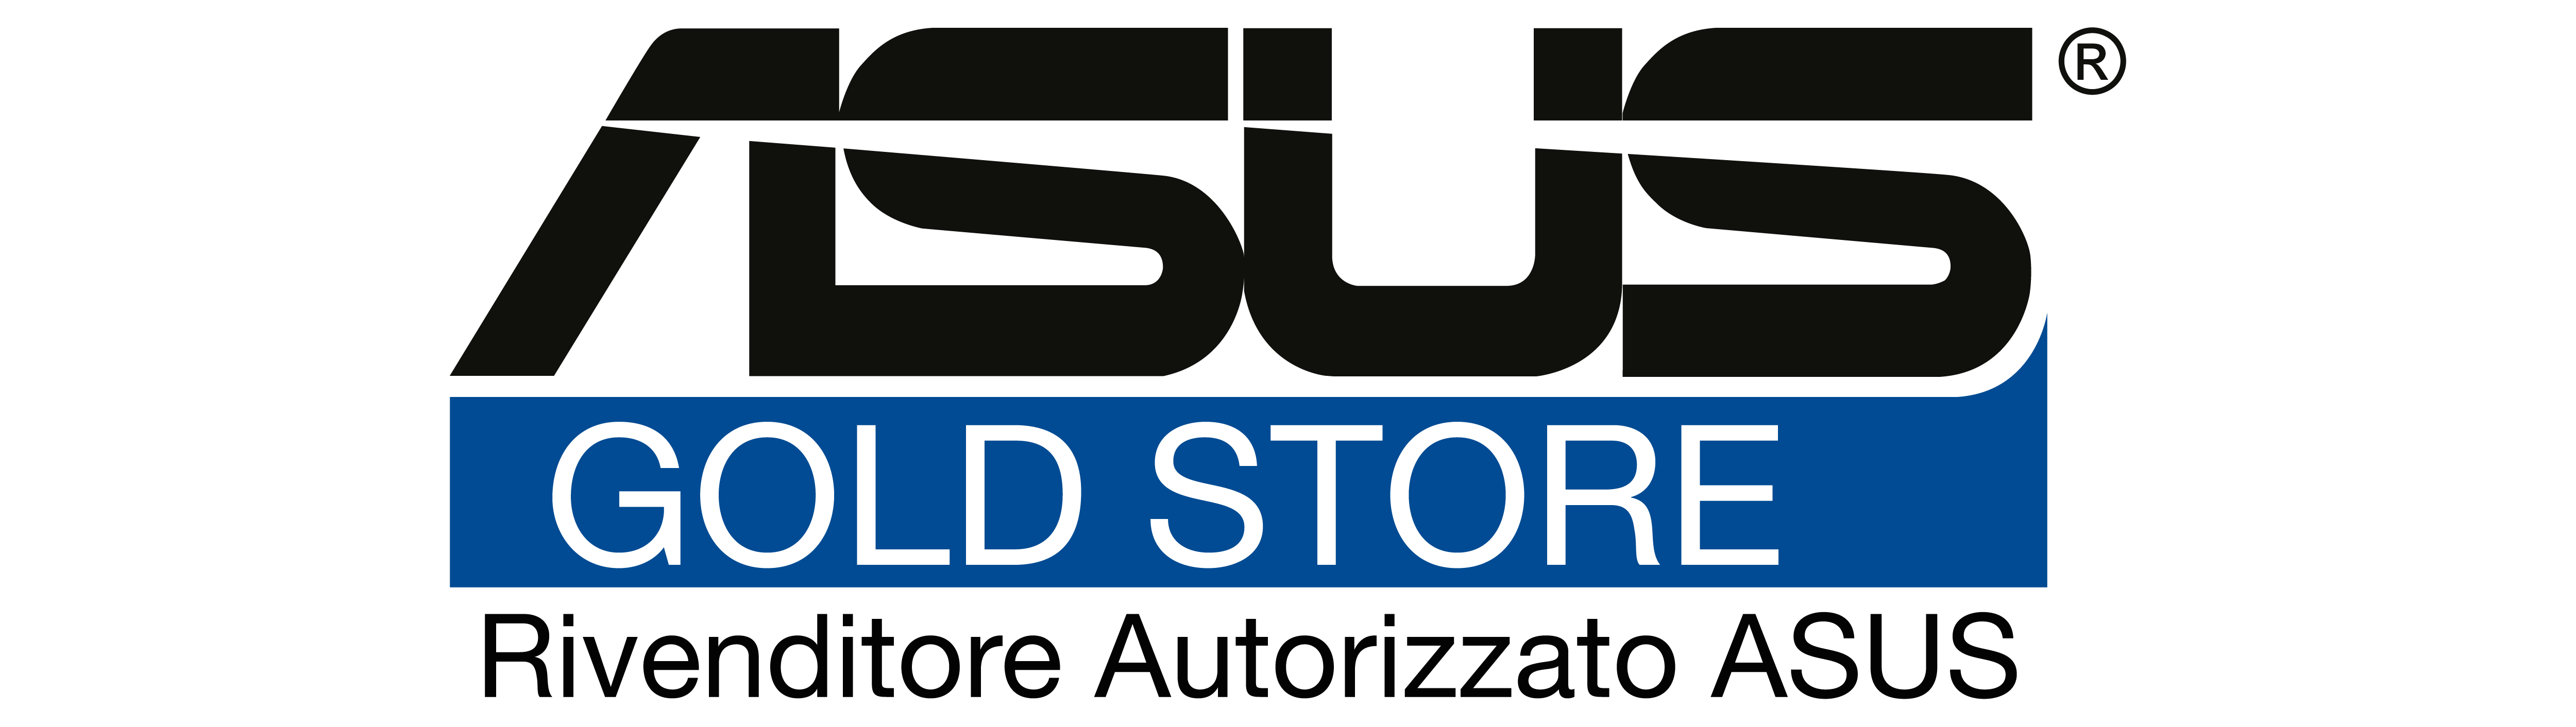 Asus Gold Store - Rivenditore Autorizzato ASUS